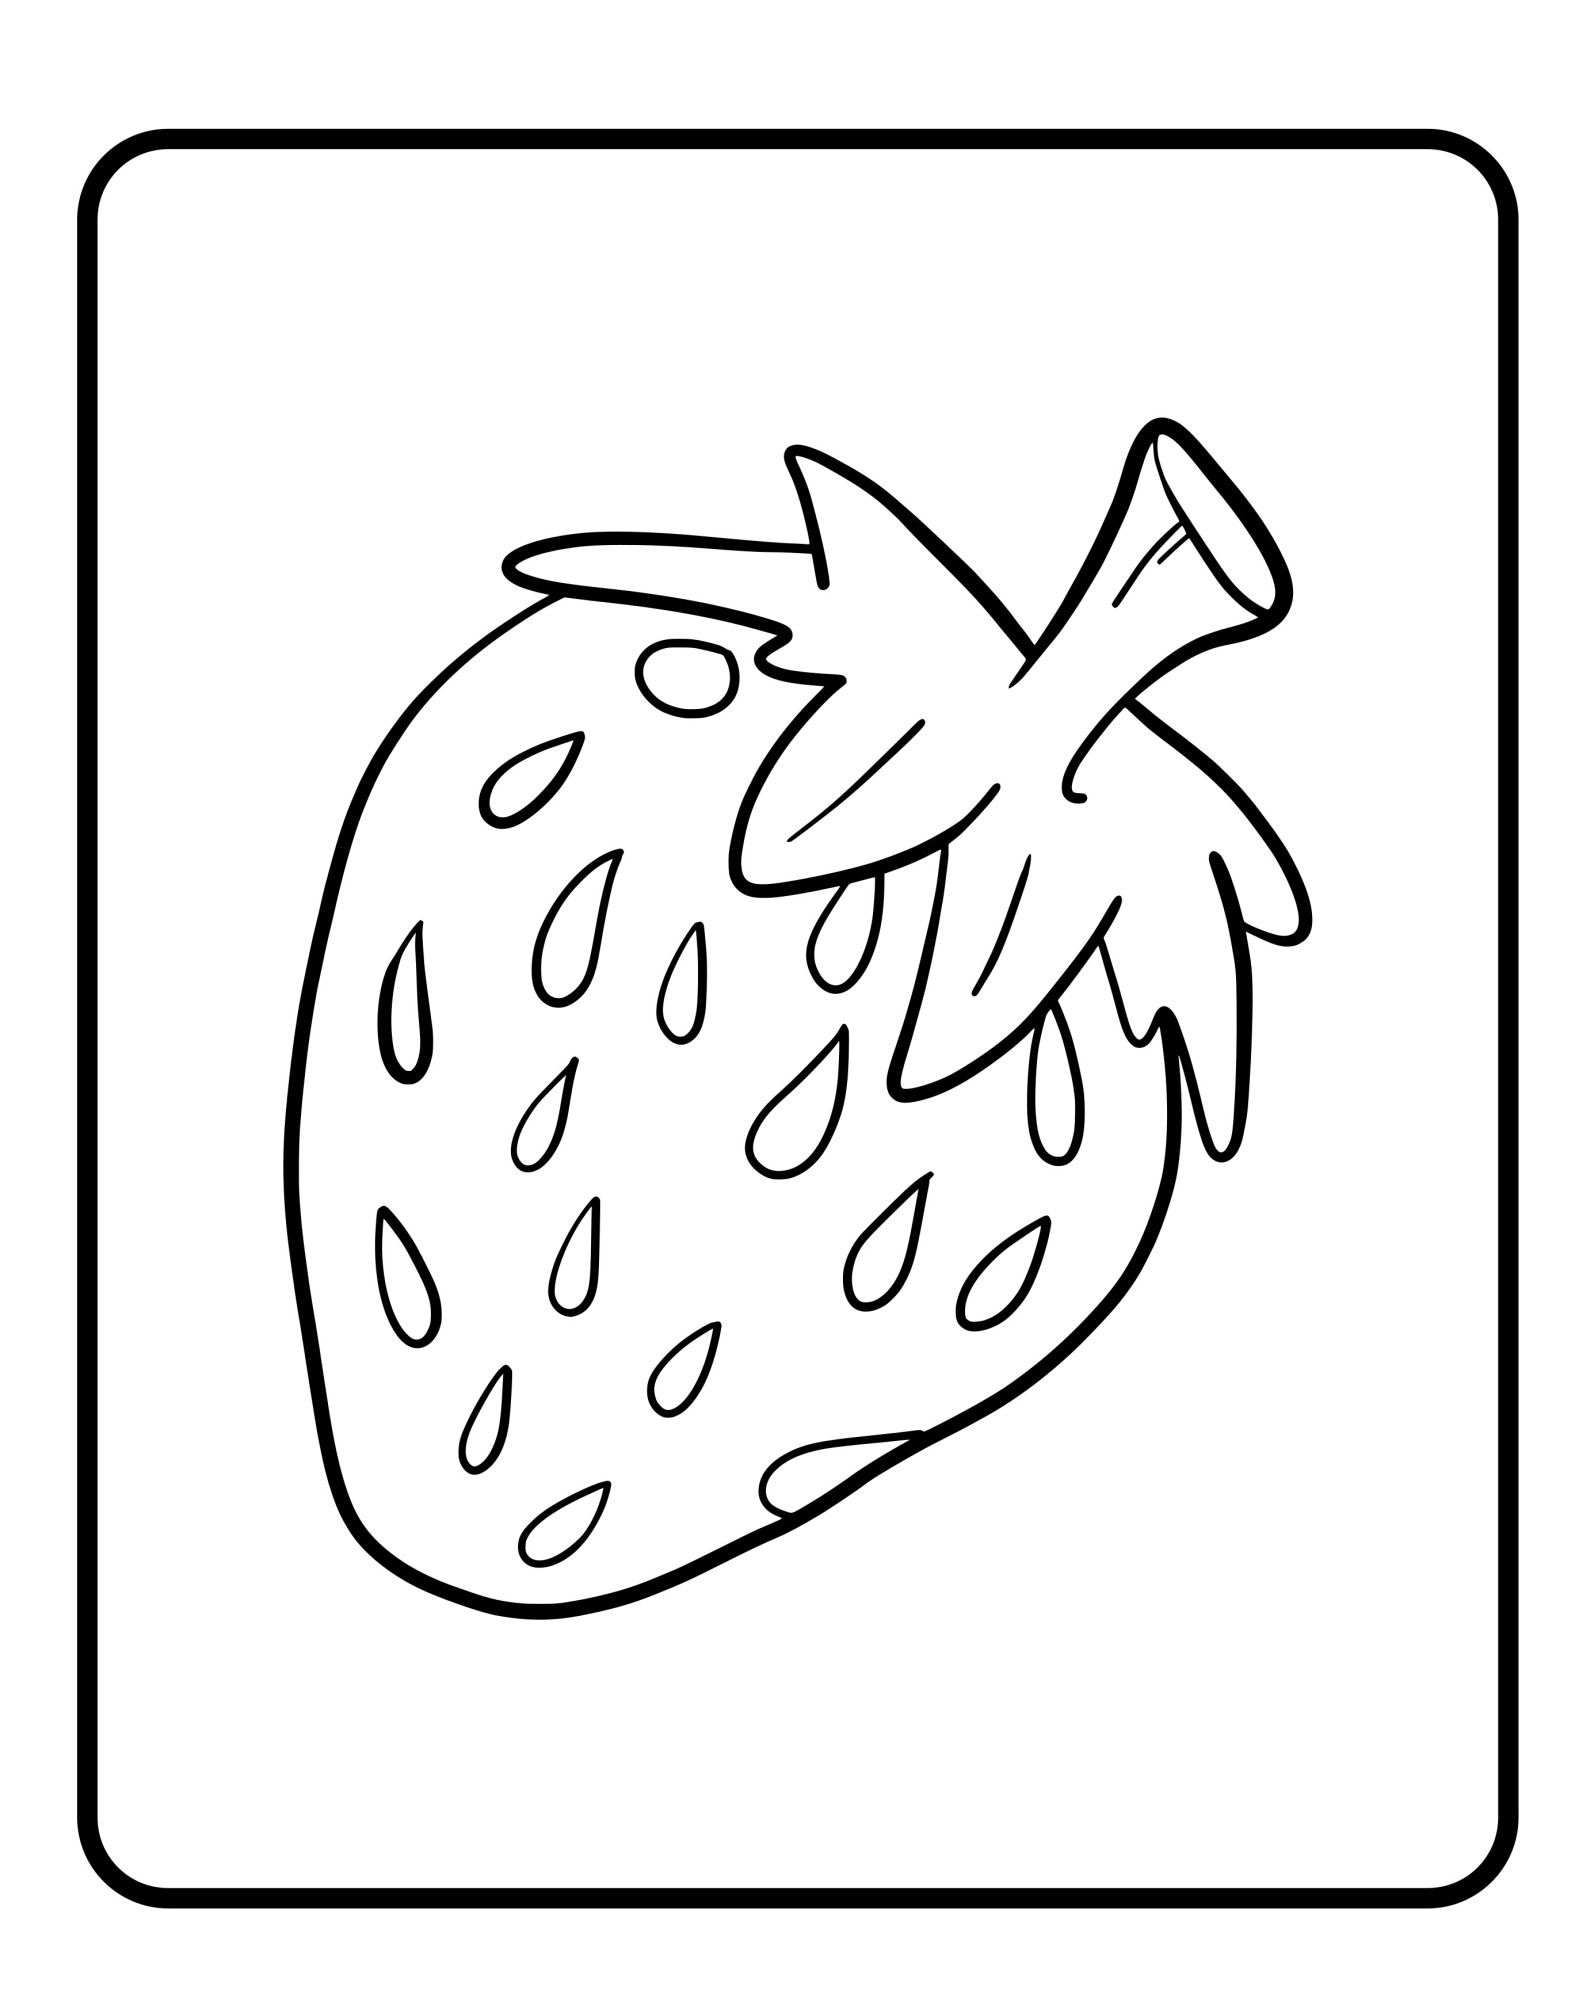 Раскраска для детей: ароматная ягода клубника